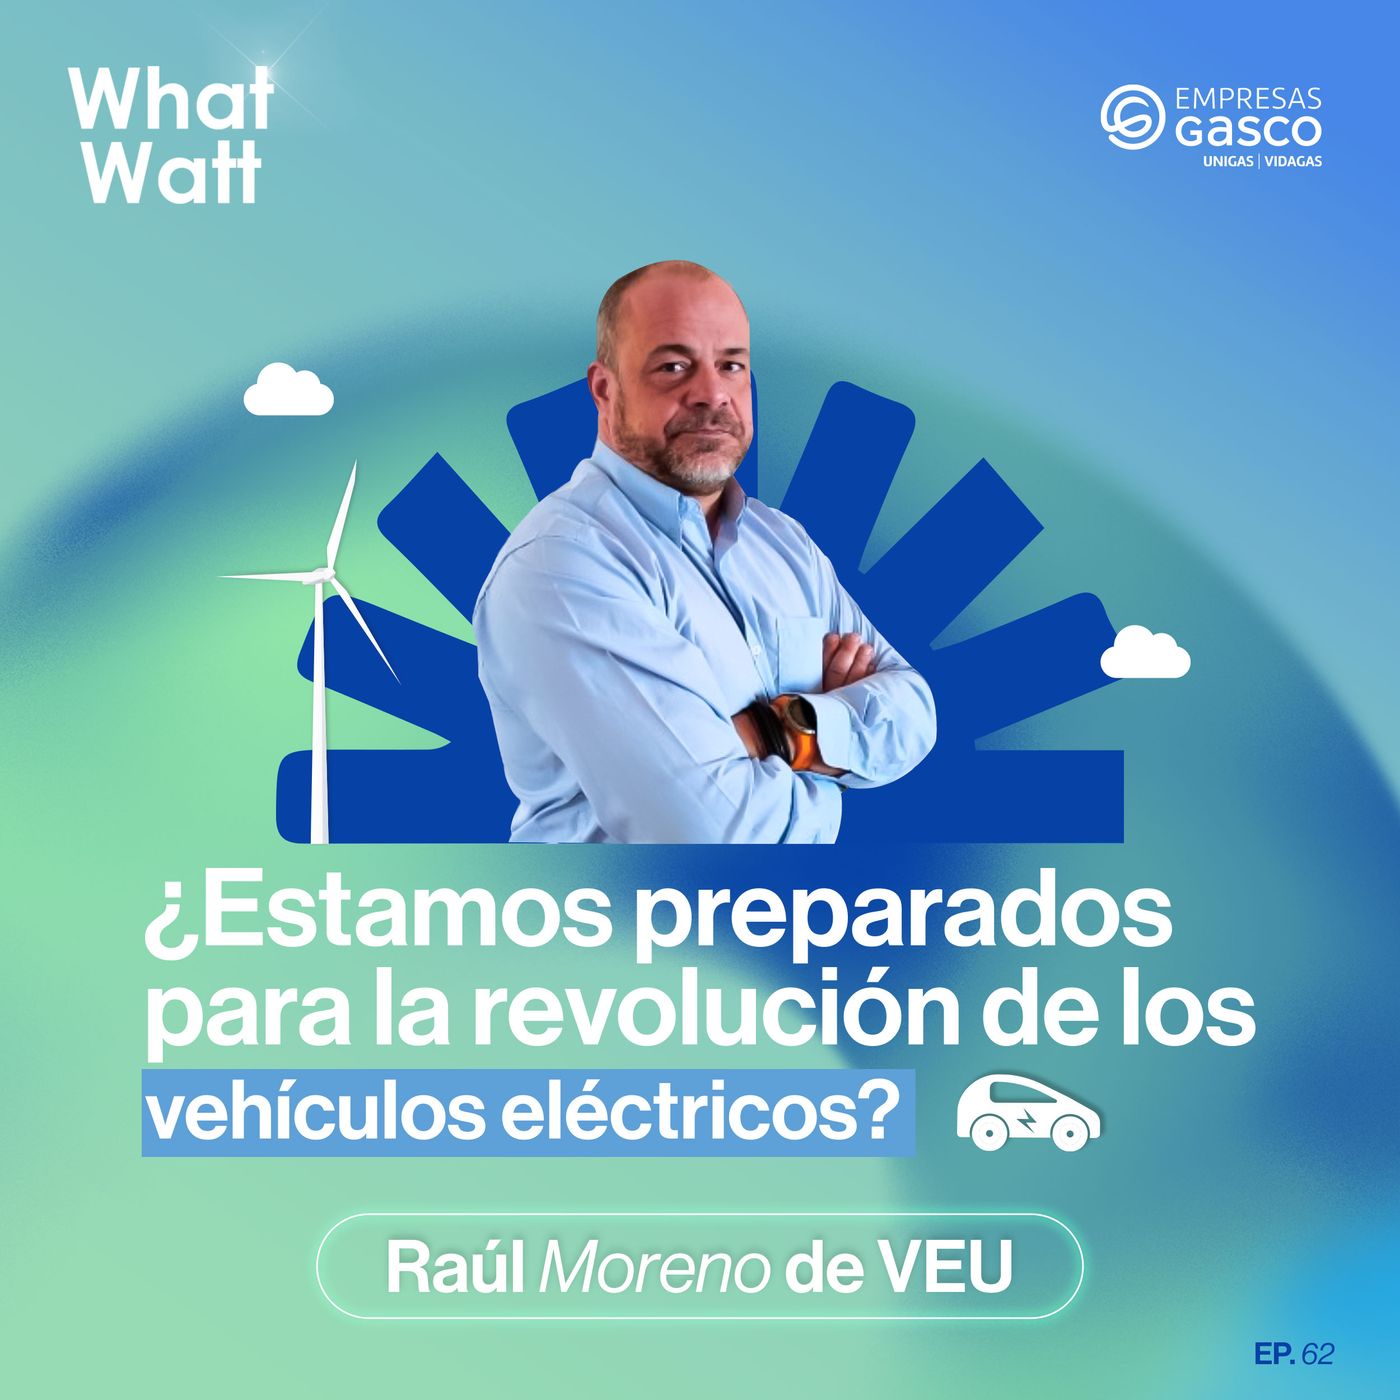 EP. 62: ¿Estamos preparados para la revolución de los vehículos eléctricos? con Raúl Moreno de VEU